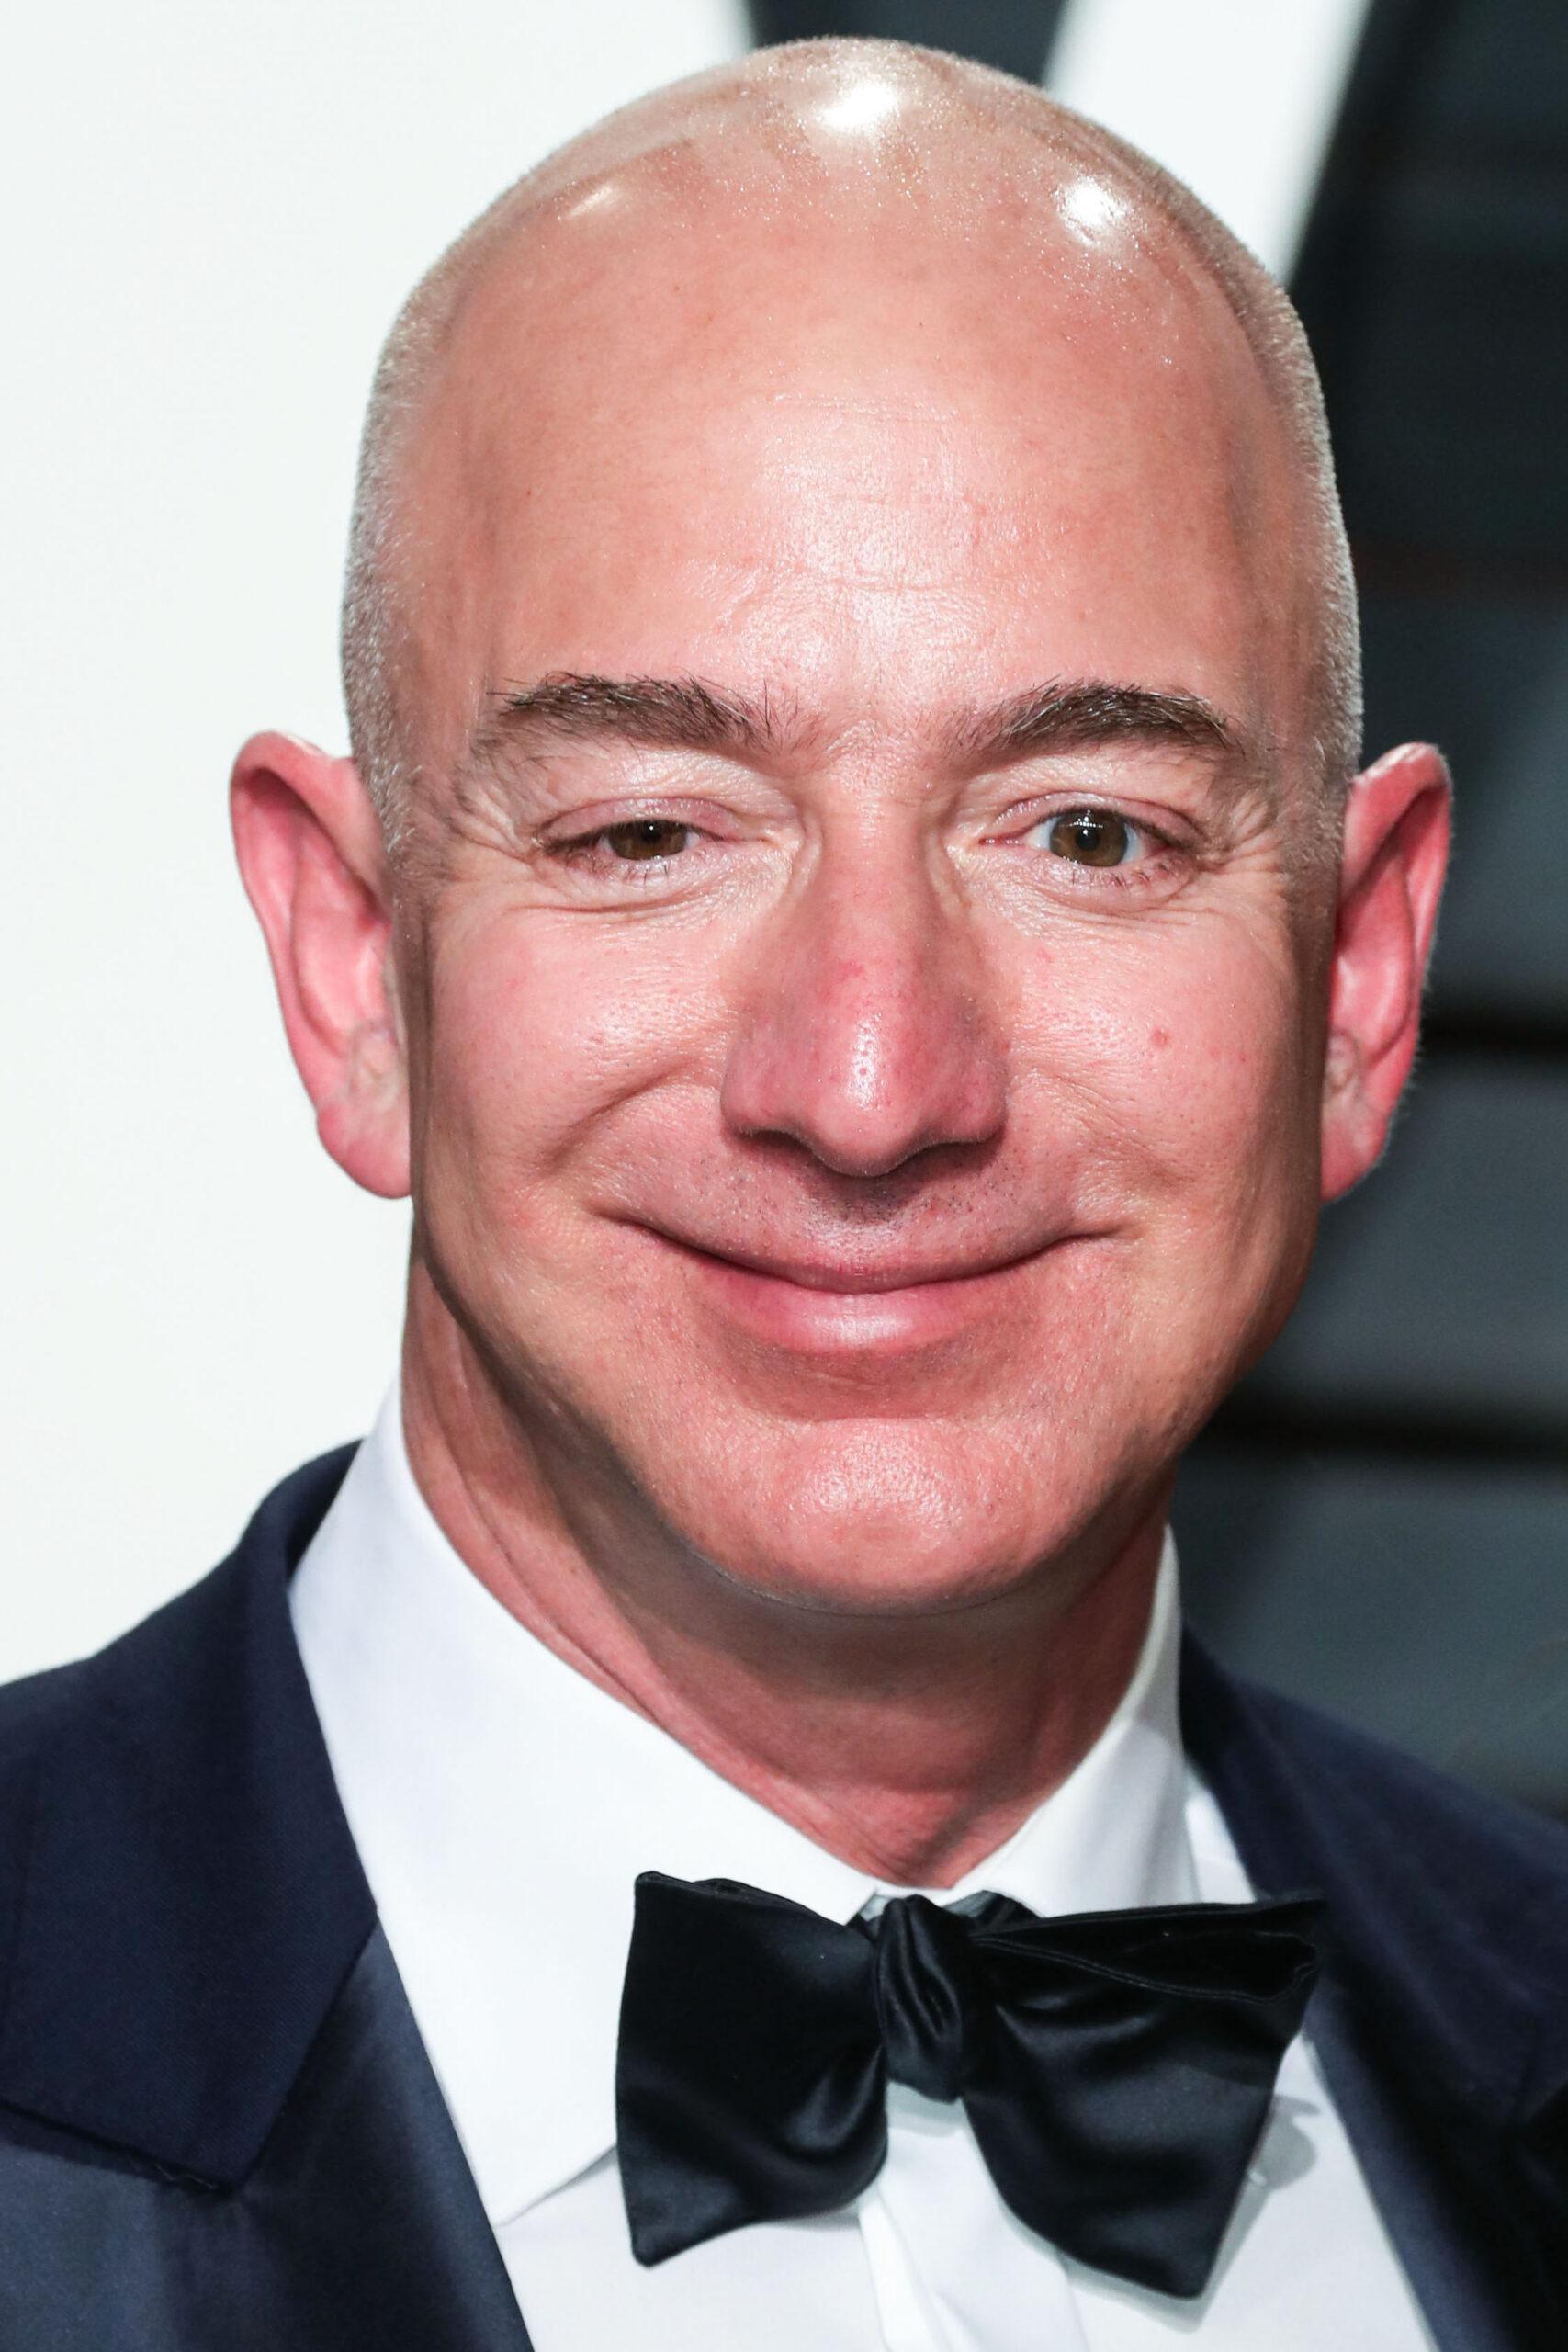 Jeff Bezos Announces $100 Million Gift To Nonprofit Feeding America